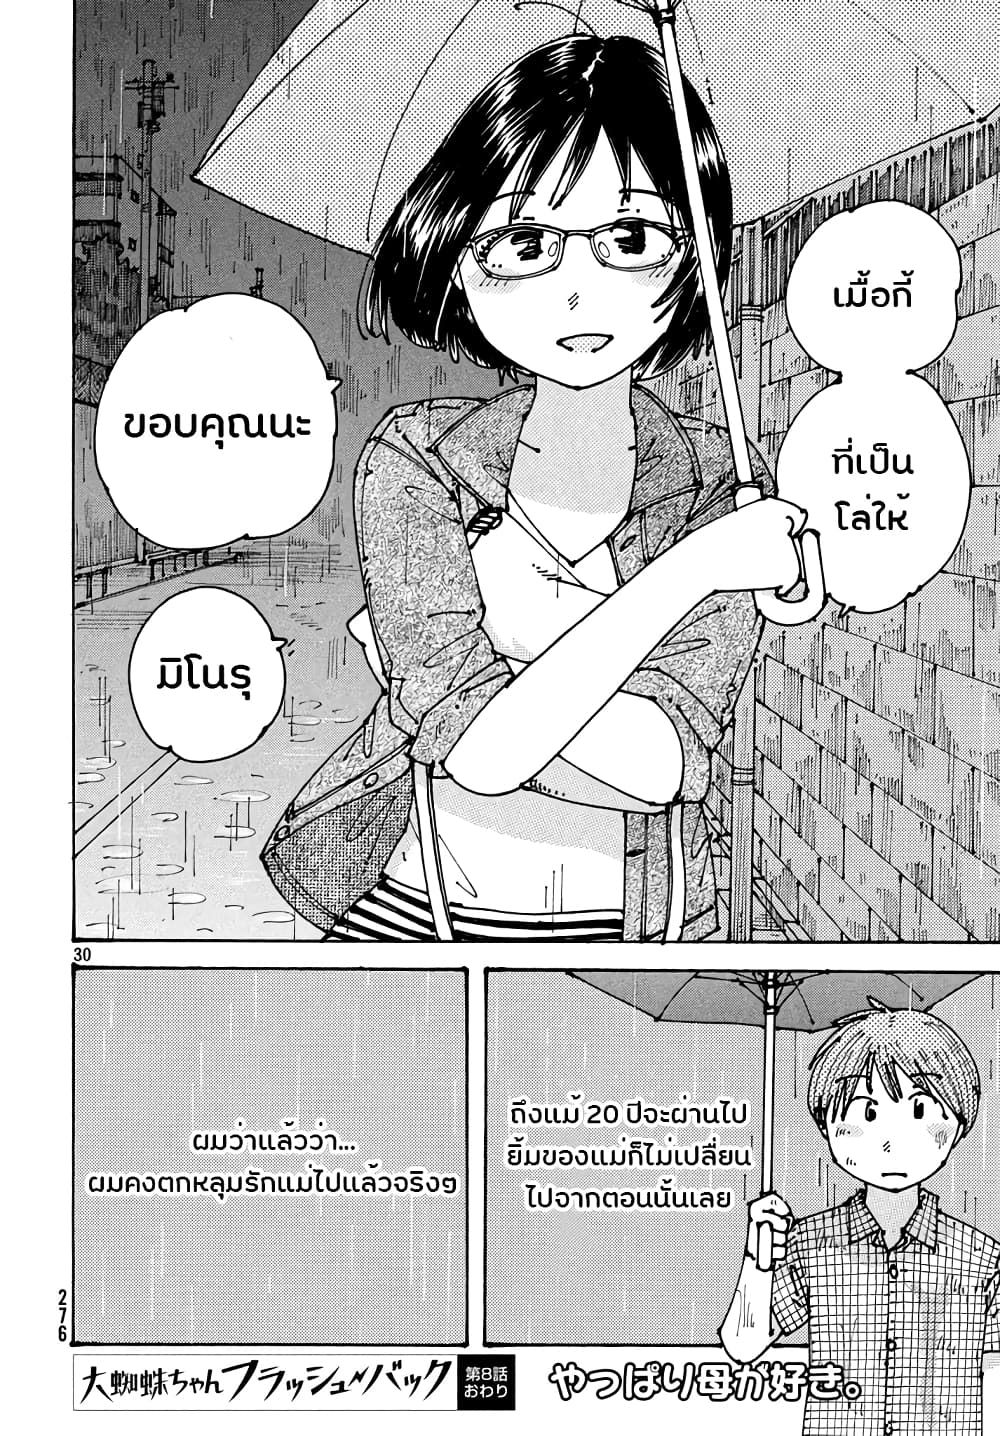 อ่านการ์ตูน Ookumo-chan Flashback 8 ภาพที่ 30